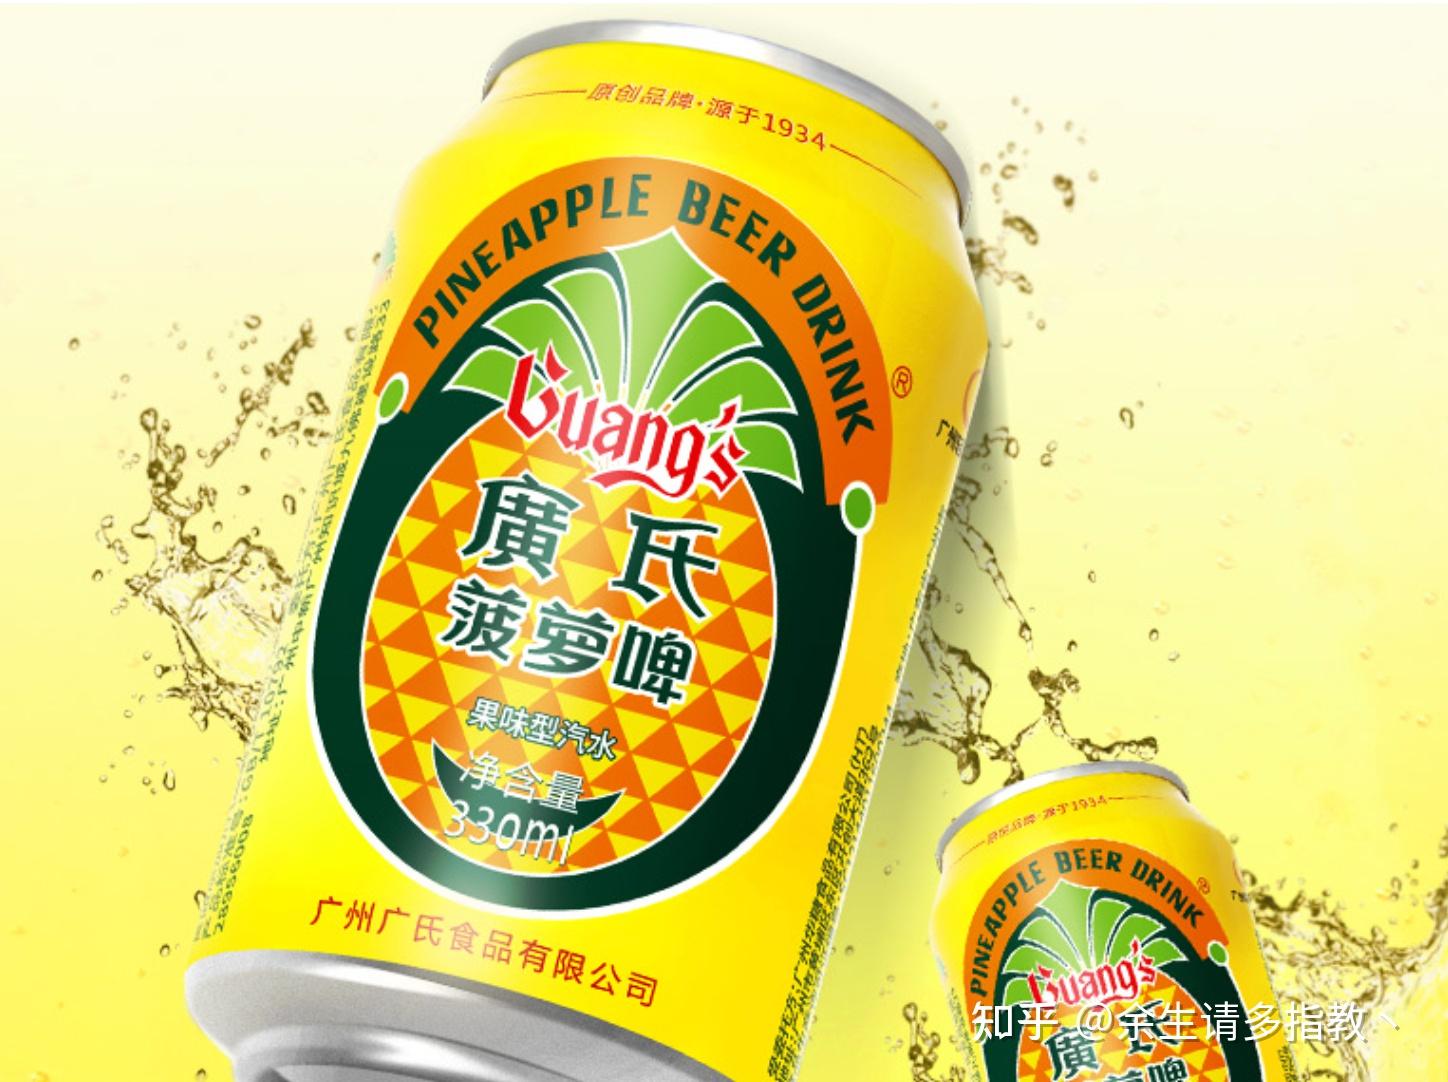 汉斯小木屋果啤 菠萝啤陕西品牌特产508ml×9瓶青岛 碳酸饮料批发-阿里巴巴